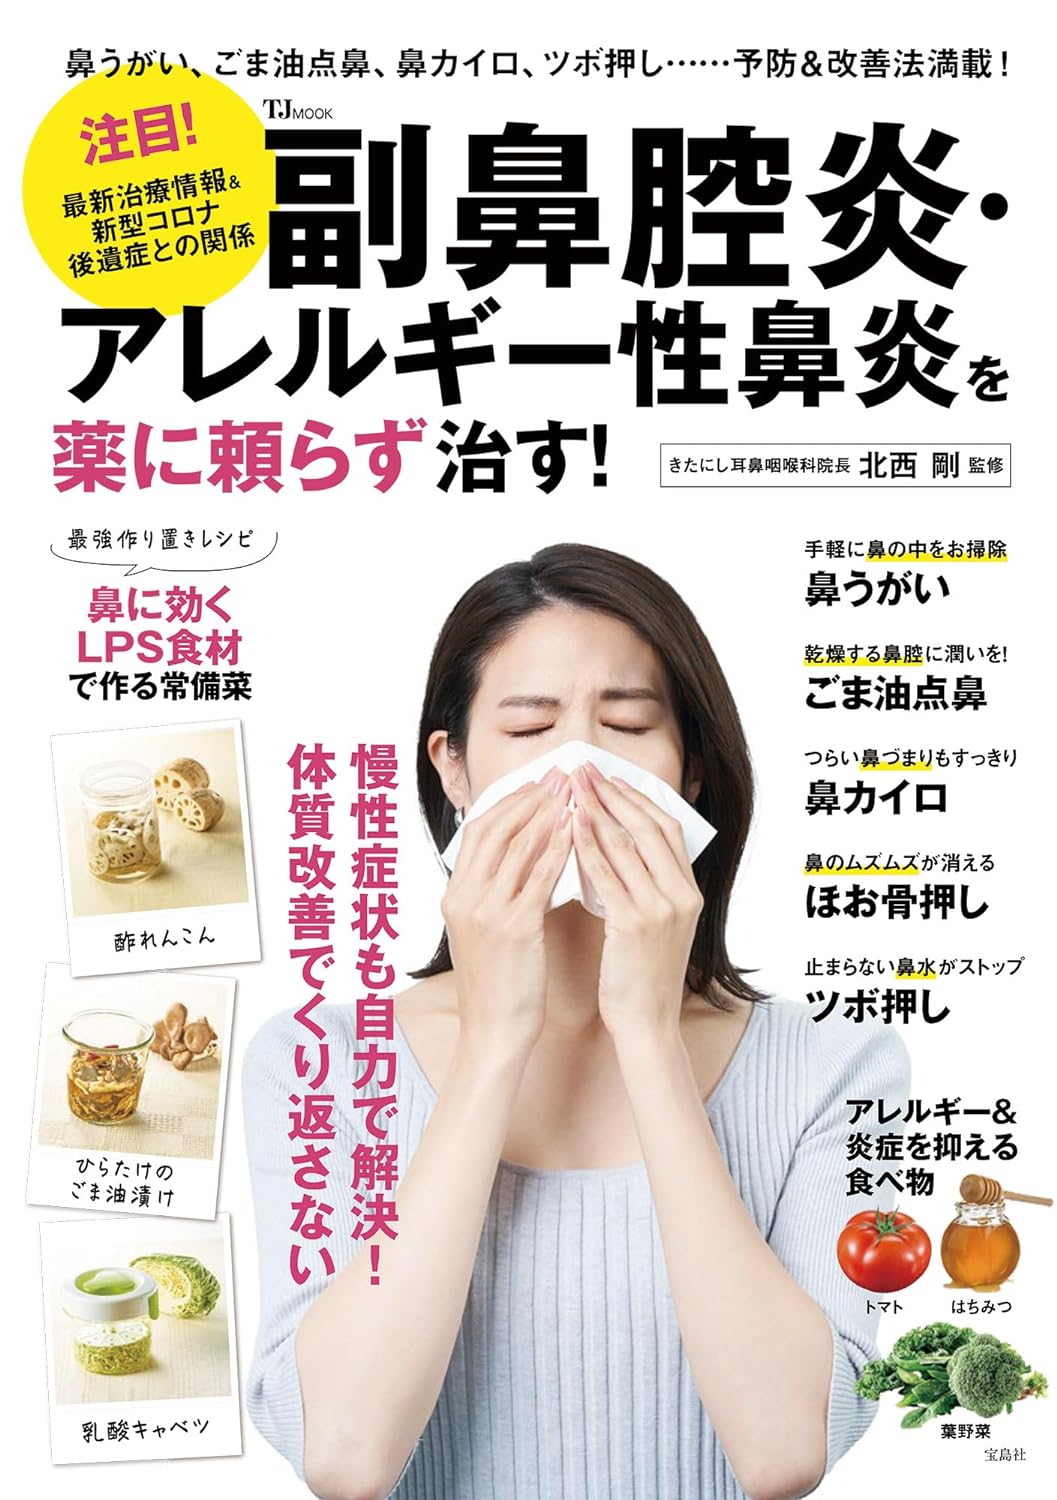 (お知らせ) 宝島社 TJ MOOK 『 副鼻腔炎・アレルギー性鼻炎を薬に頼らず治す!  』発売